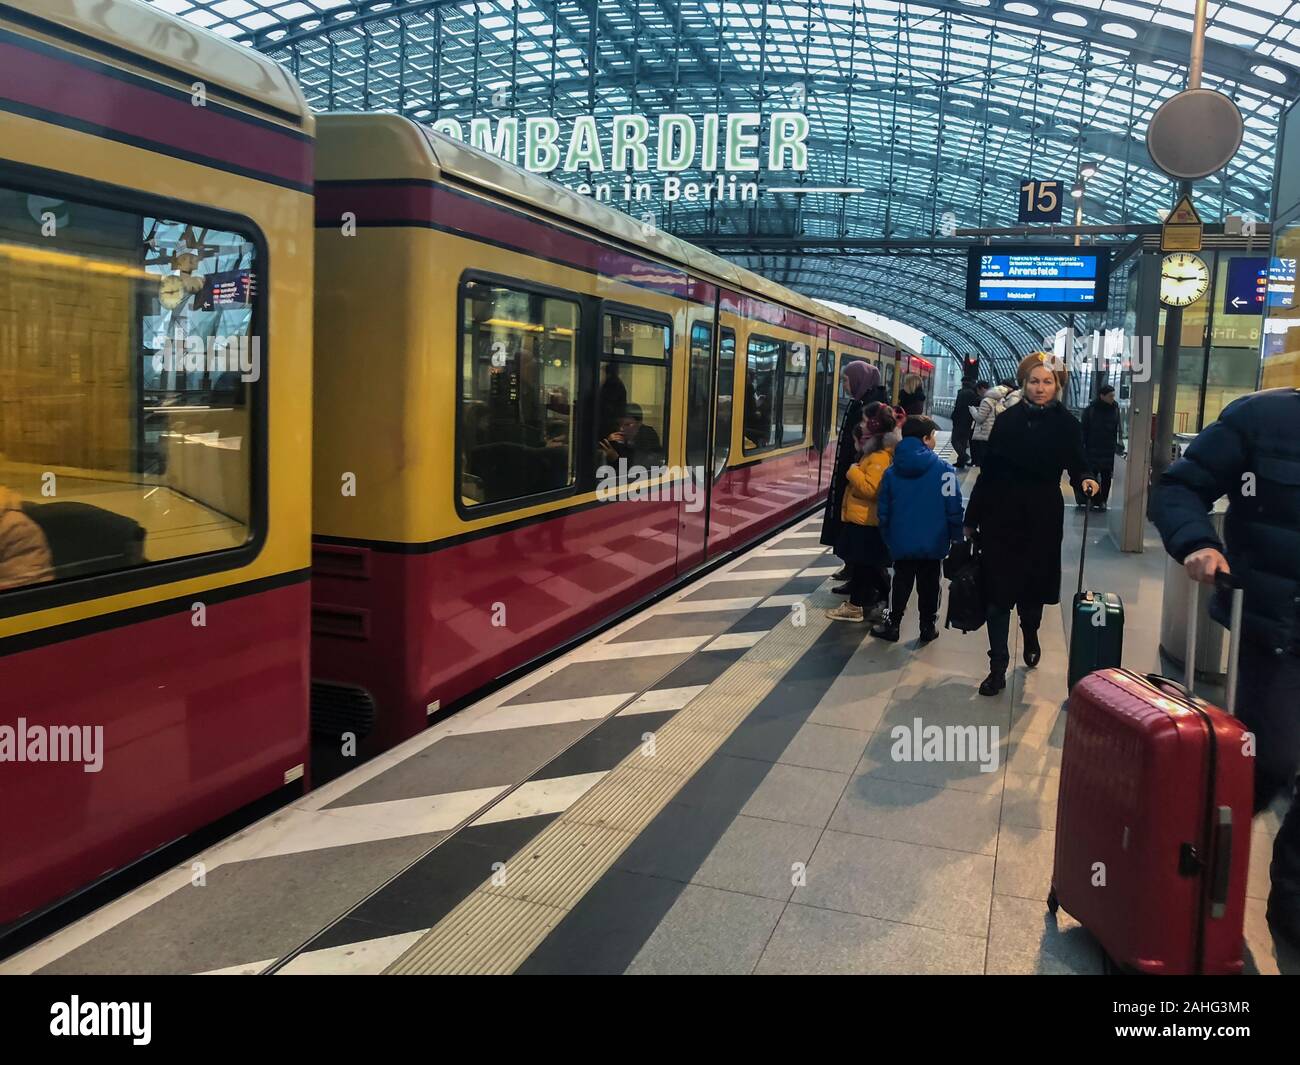 Berlin, Allemagne, touristes voyageant sur le métro Métro transport en commun, gare centrale de Berlin, plate-forme, intérieurs de métro, trains de trajet Banque D'Images